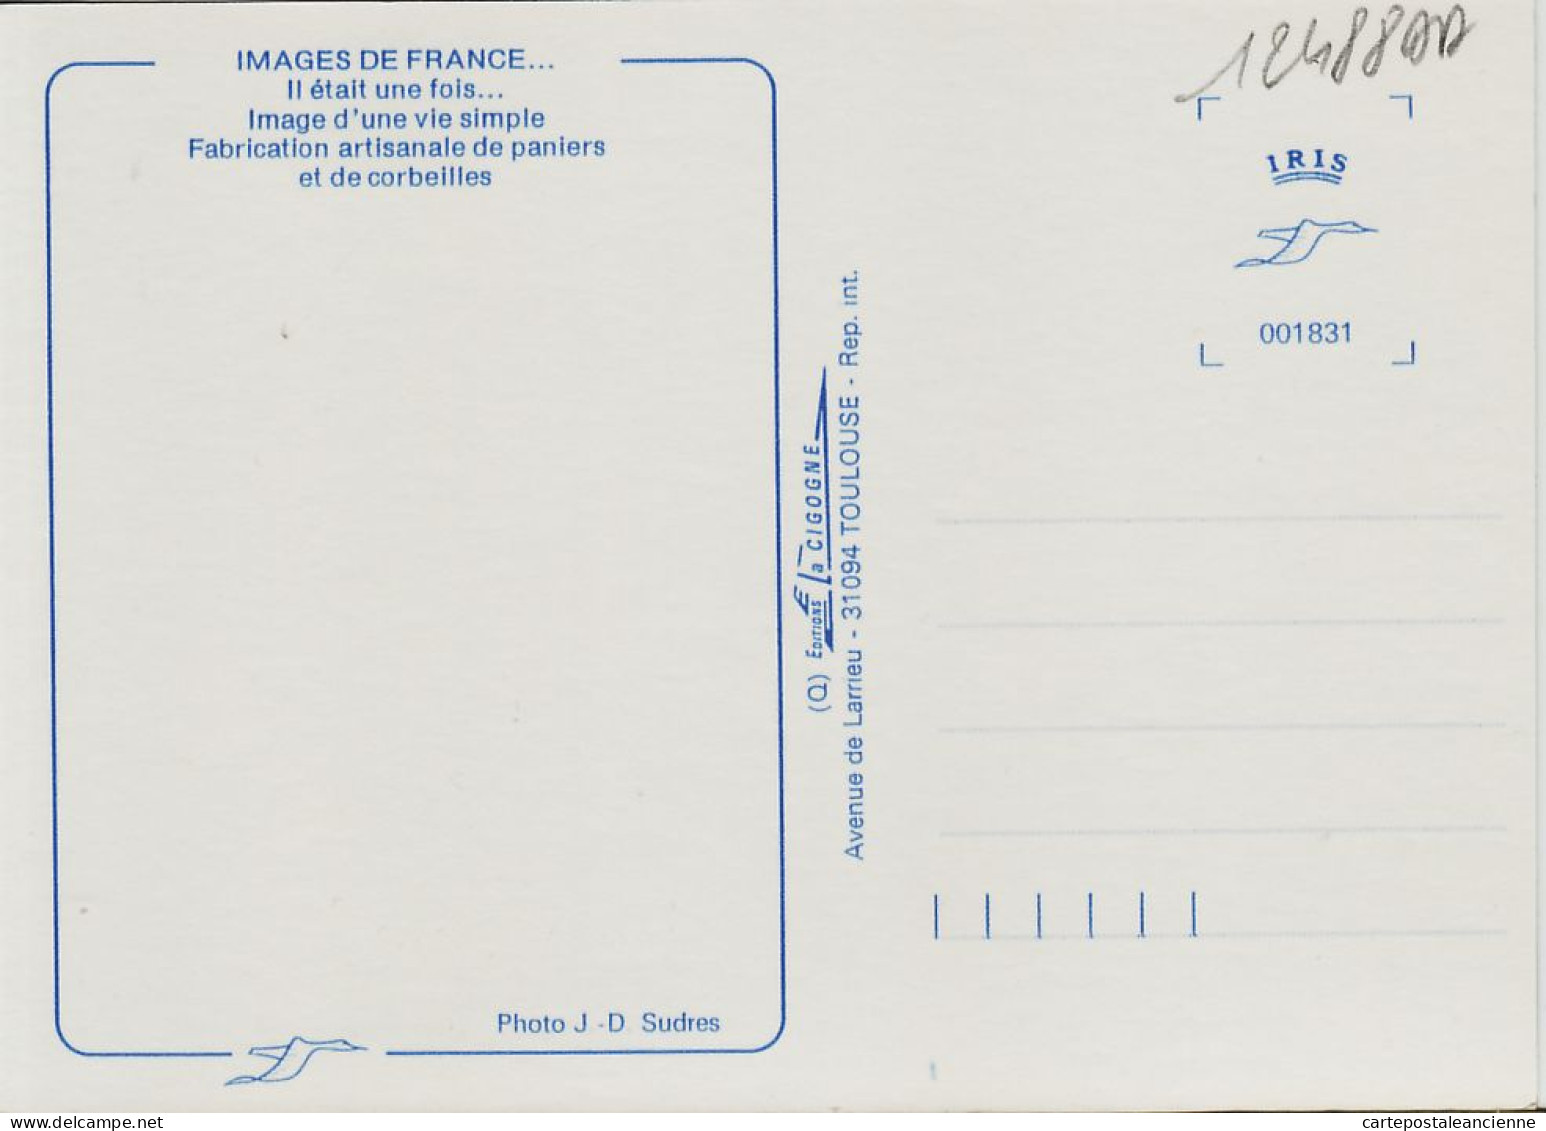 05453 / Midi Pyrénées Fabrication Artisanale De PANIERS CORBEILLES Osier Metier Paysan 1985s - IRIS CIGOGNE - Bauern